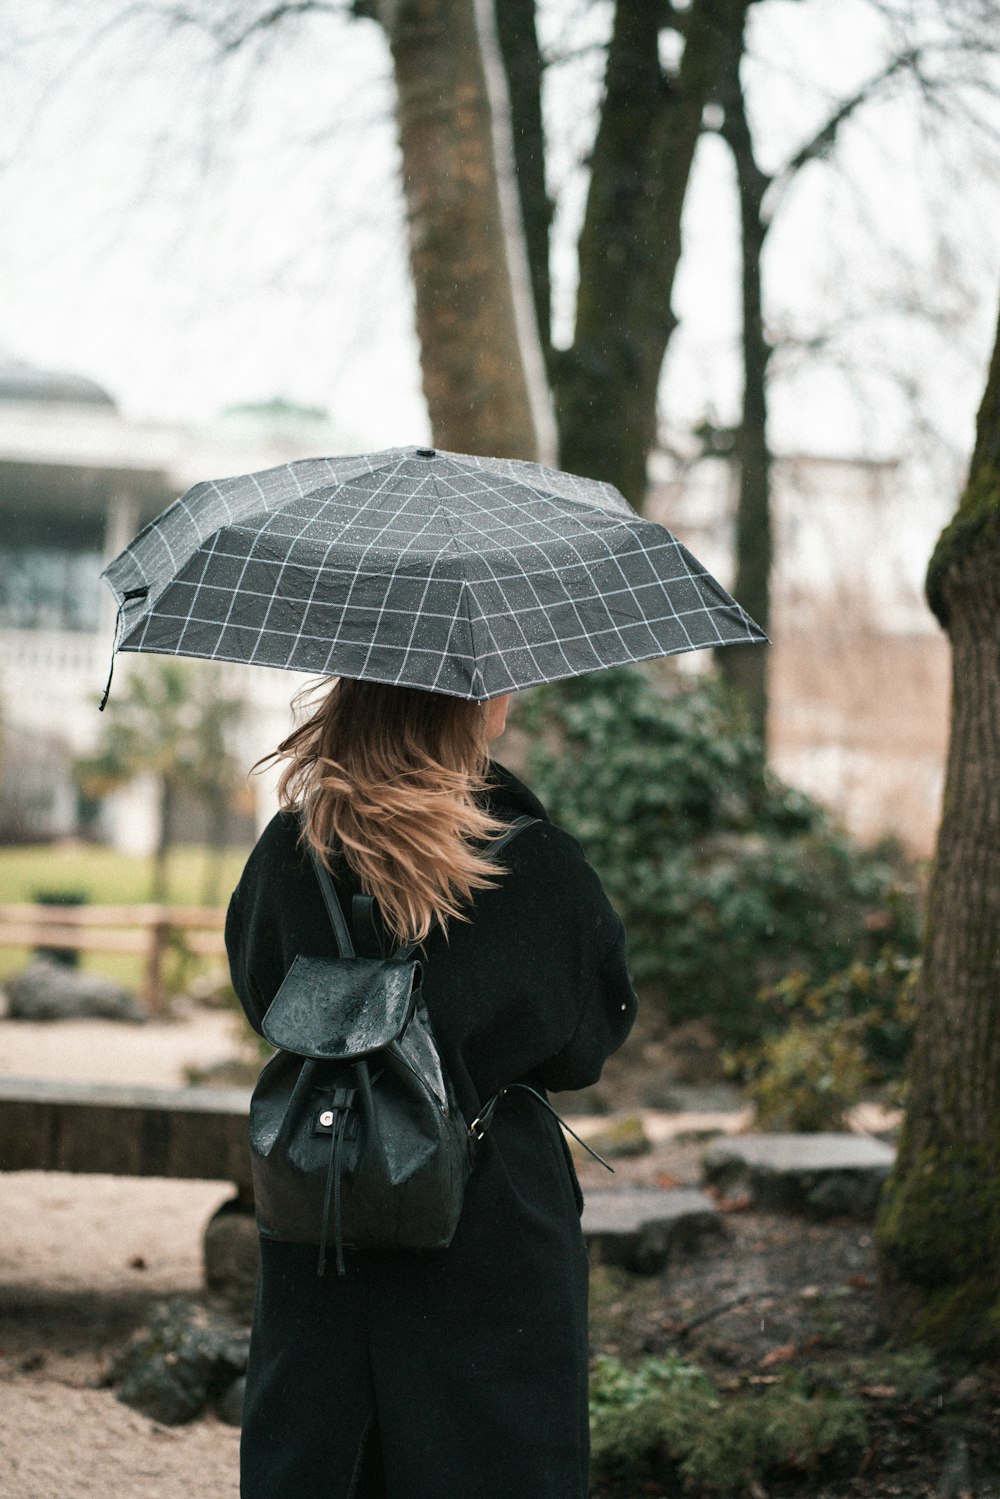 Frau im schwarzen Mantel mit Regenschirm